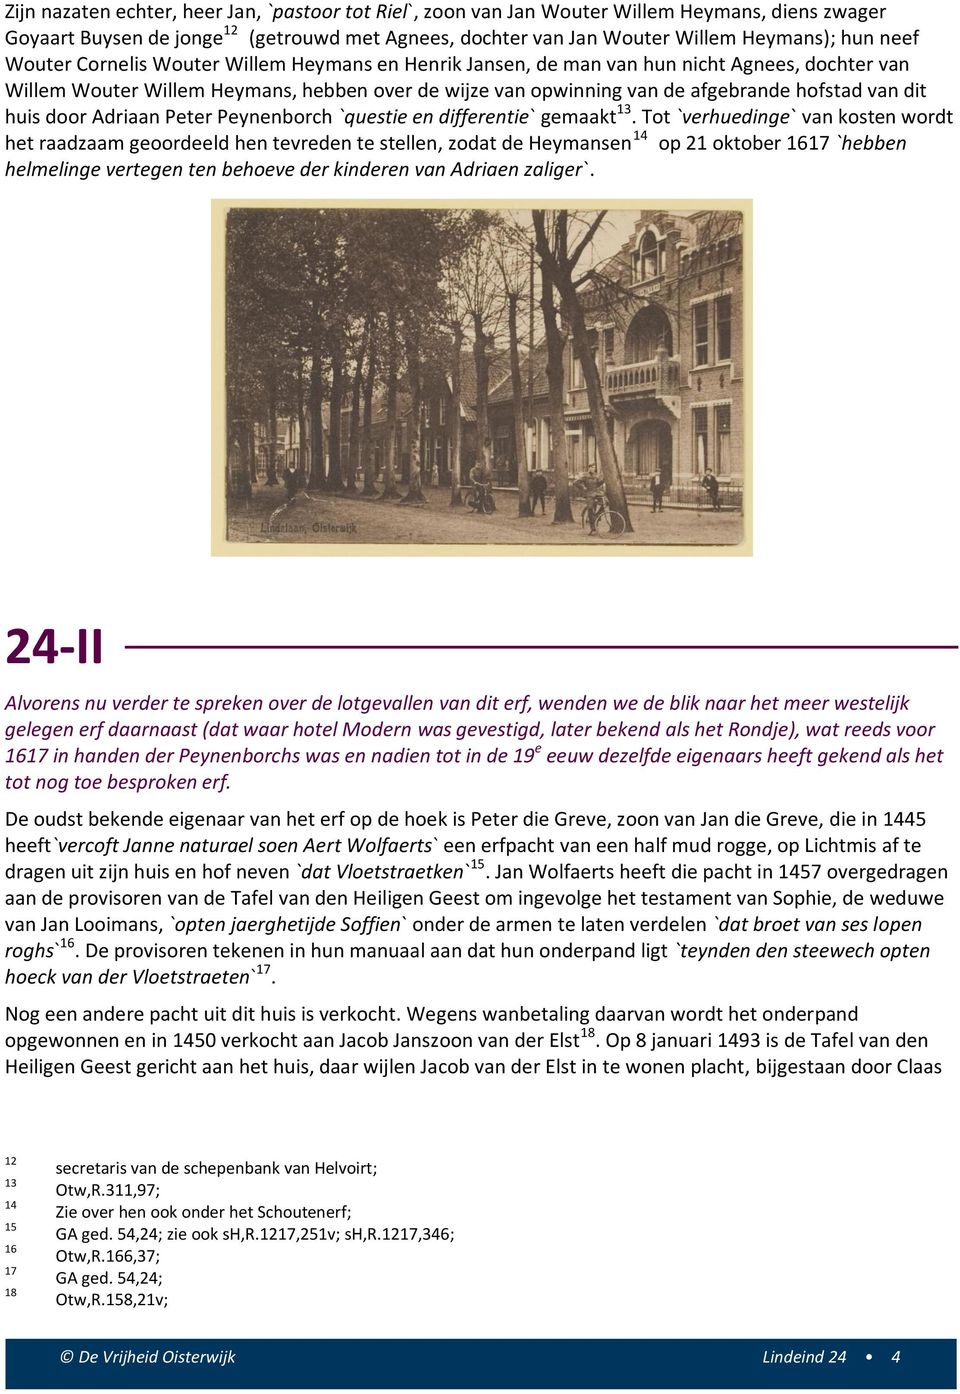 huis door Adriaan Peter Peynenborch `questie en differentie` gemaakt 13.